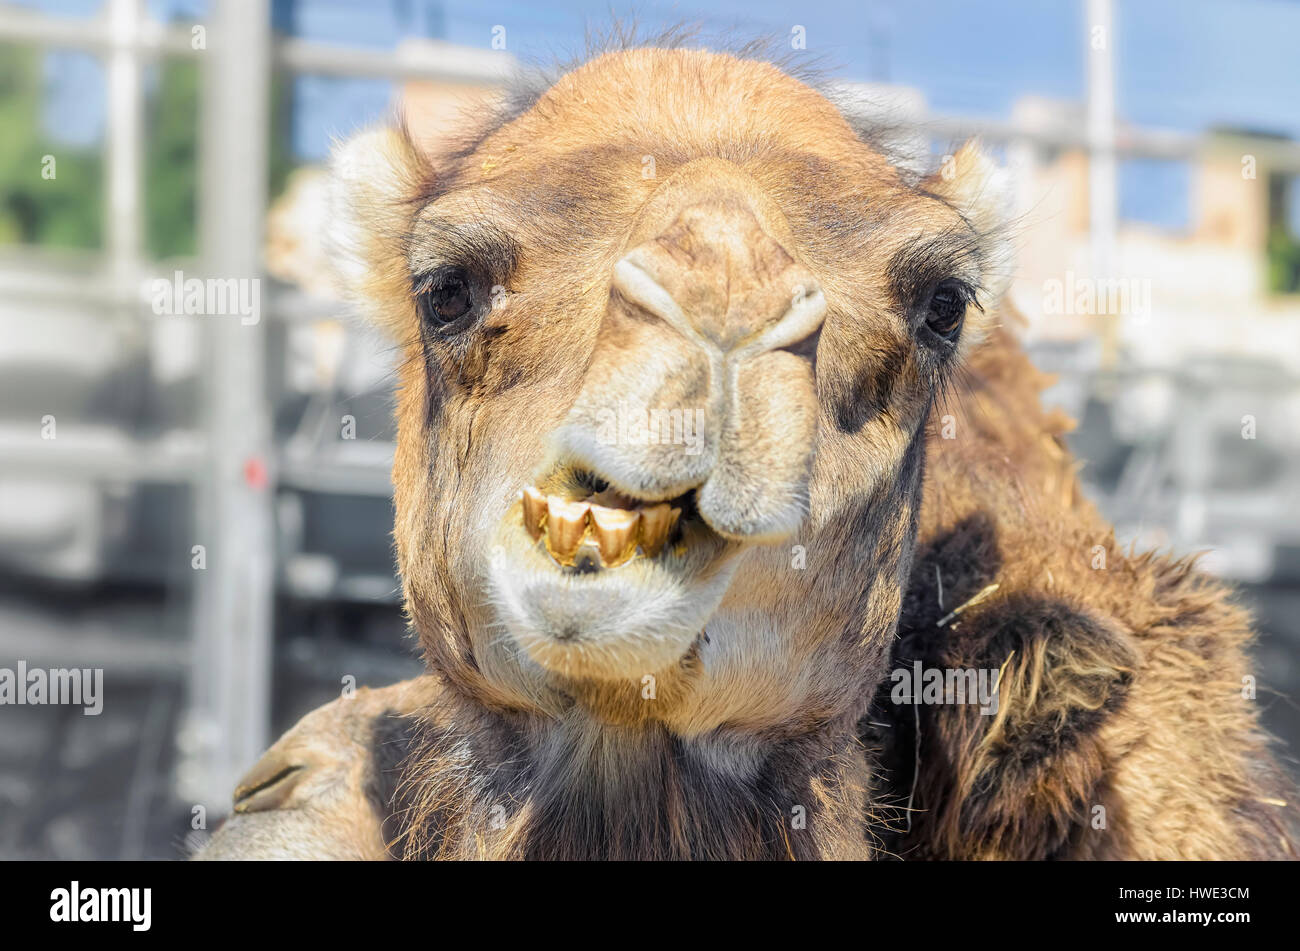 Camelus Dromedarius. Mit Blick auf ein Dromedar, genannt auch das arabische Kamel. Moment, wenn er den Mund offen hat und seine Zähne zeigen. Im Vordergrund. Stockfoto